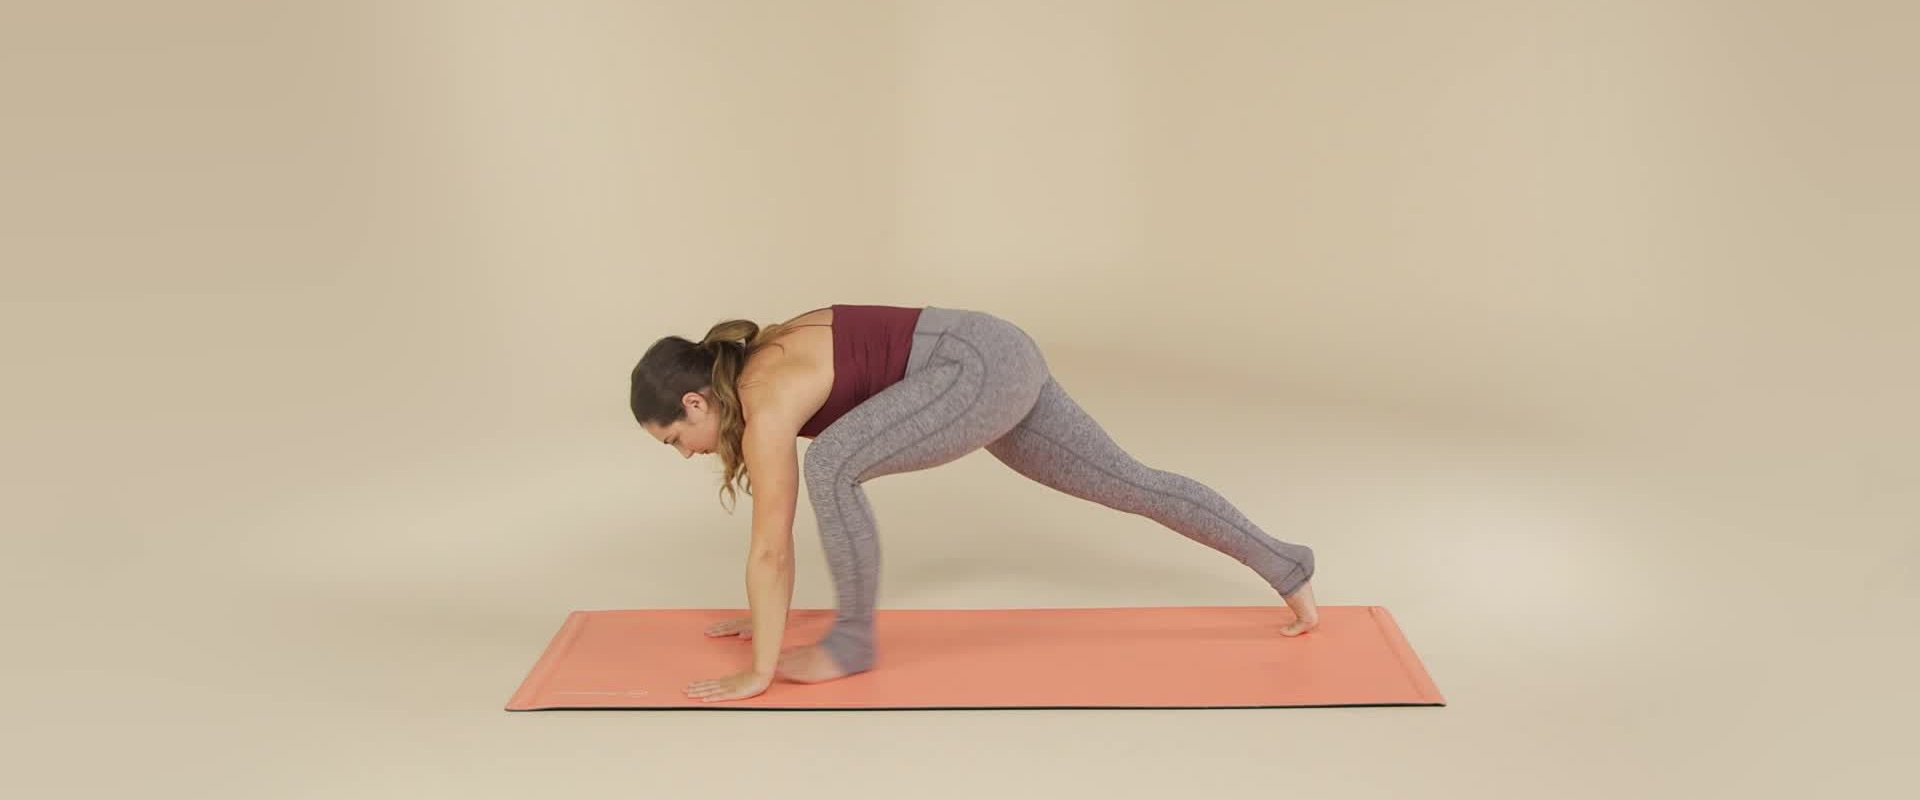 Is vinyasa yoga ok voor beginners?